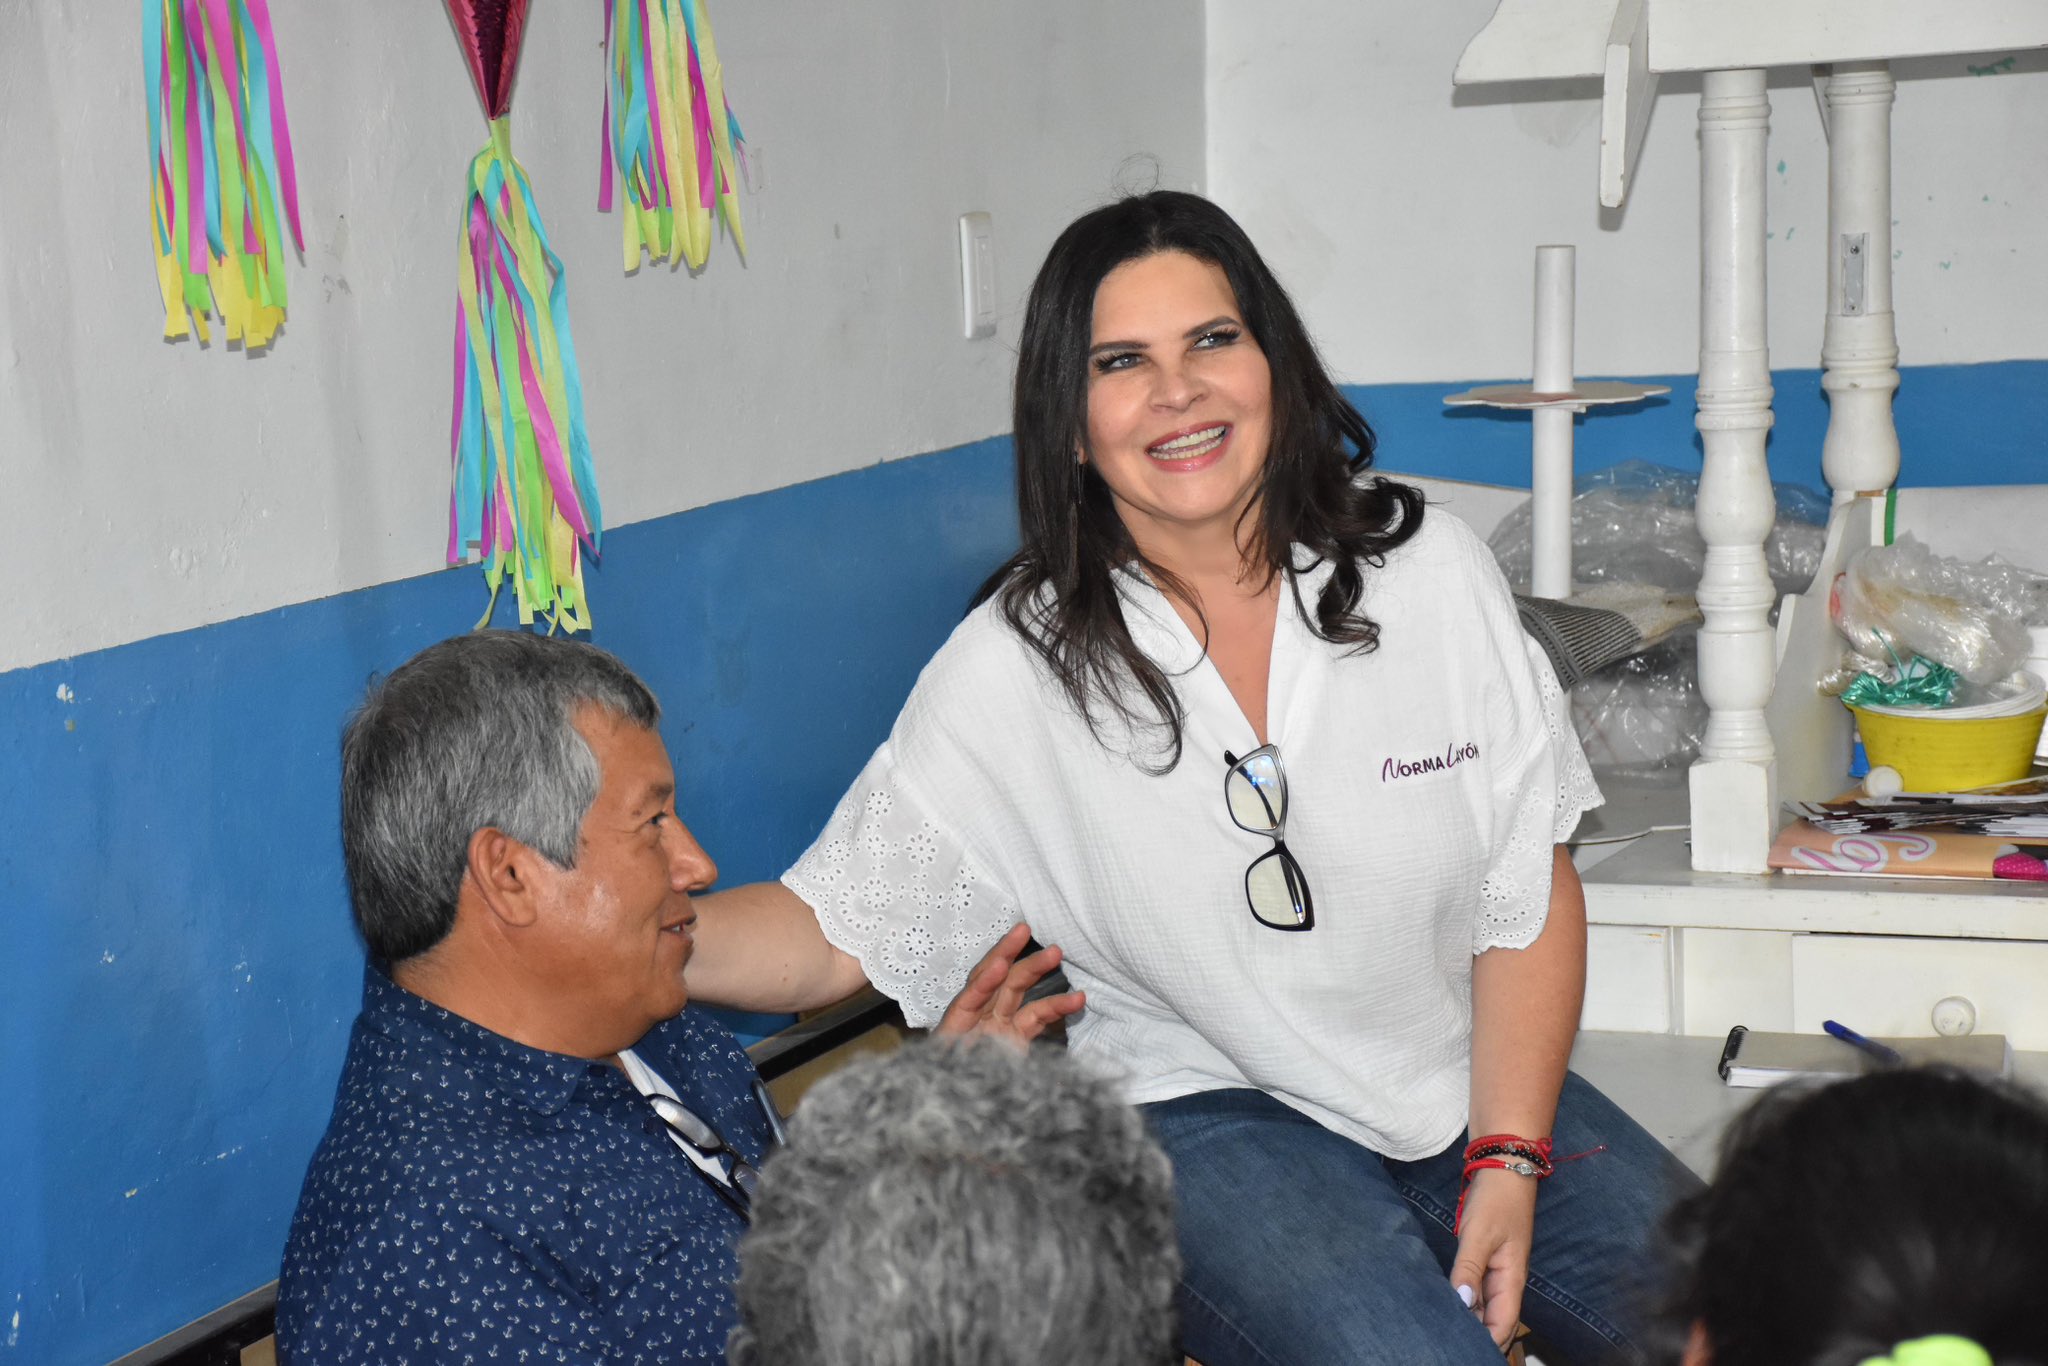 Confirma Norma Layón que se registrará para encuesta de Morena a gubernatura